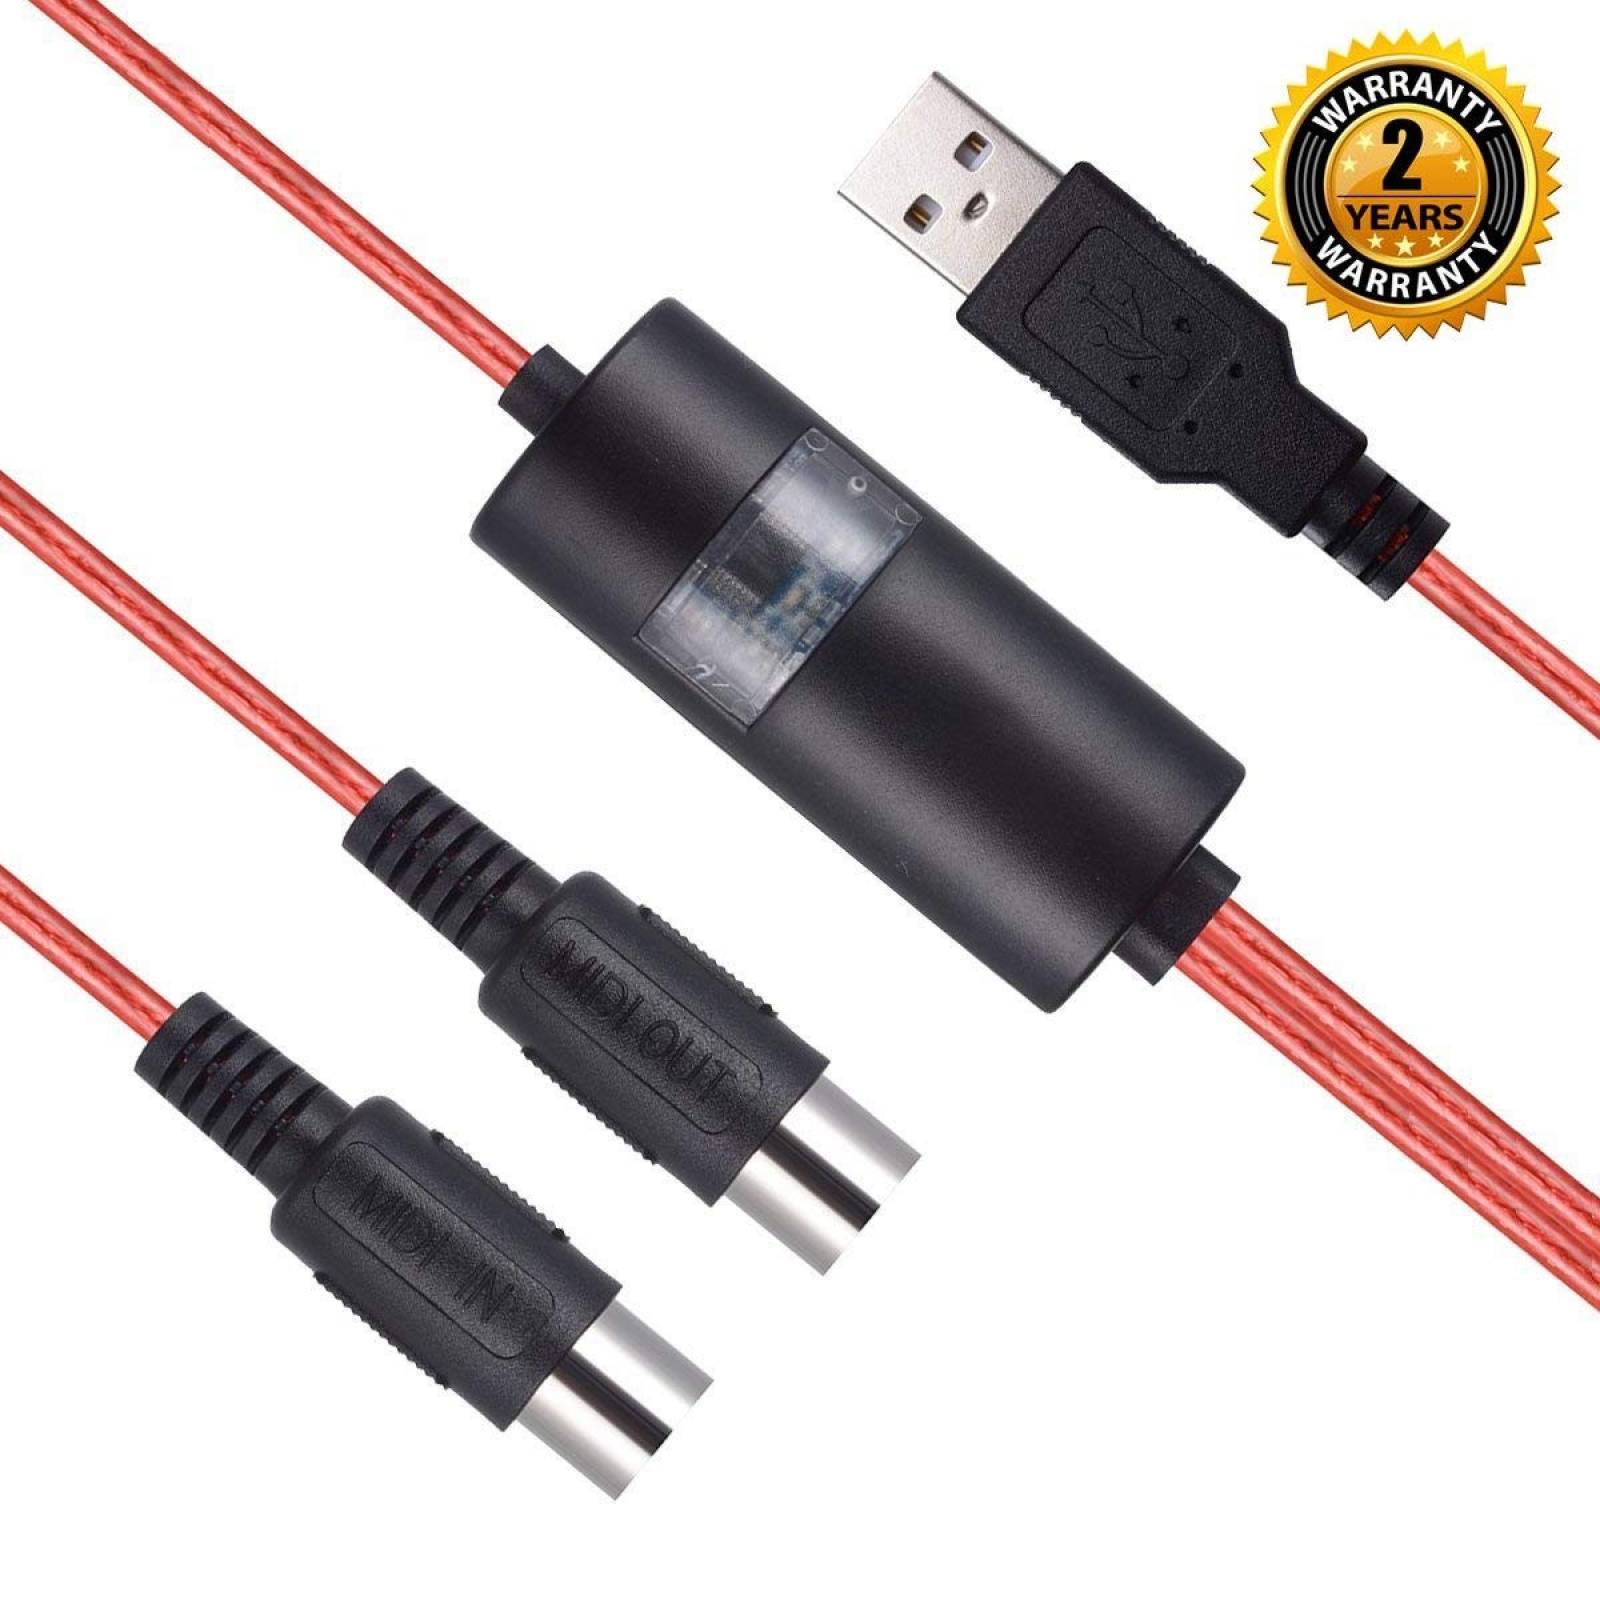 Cable Convertidor OIBTECH USB a MIDI Pc Mac 2m -Rojo